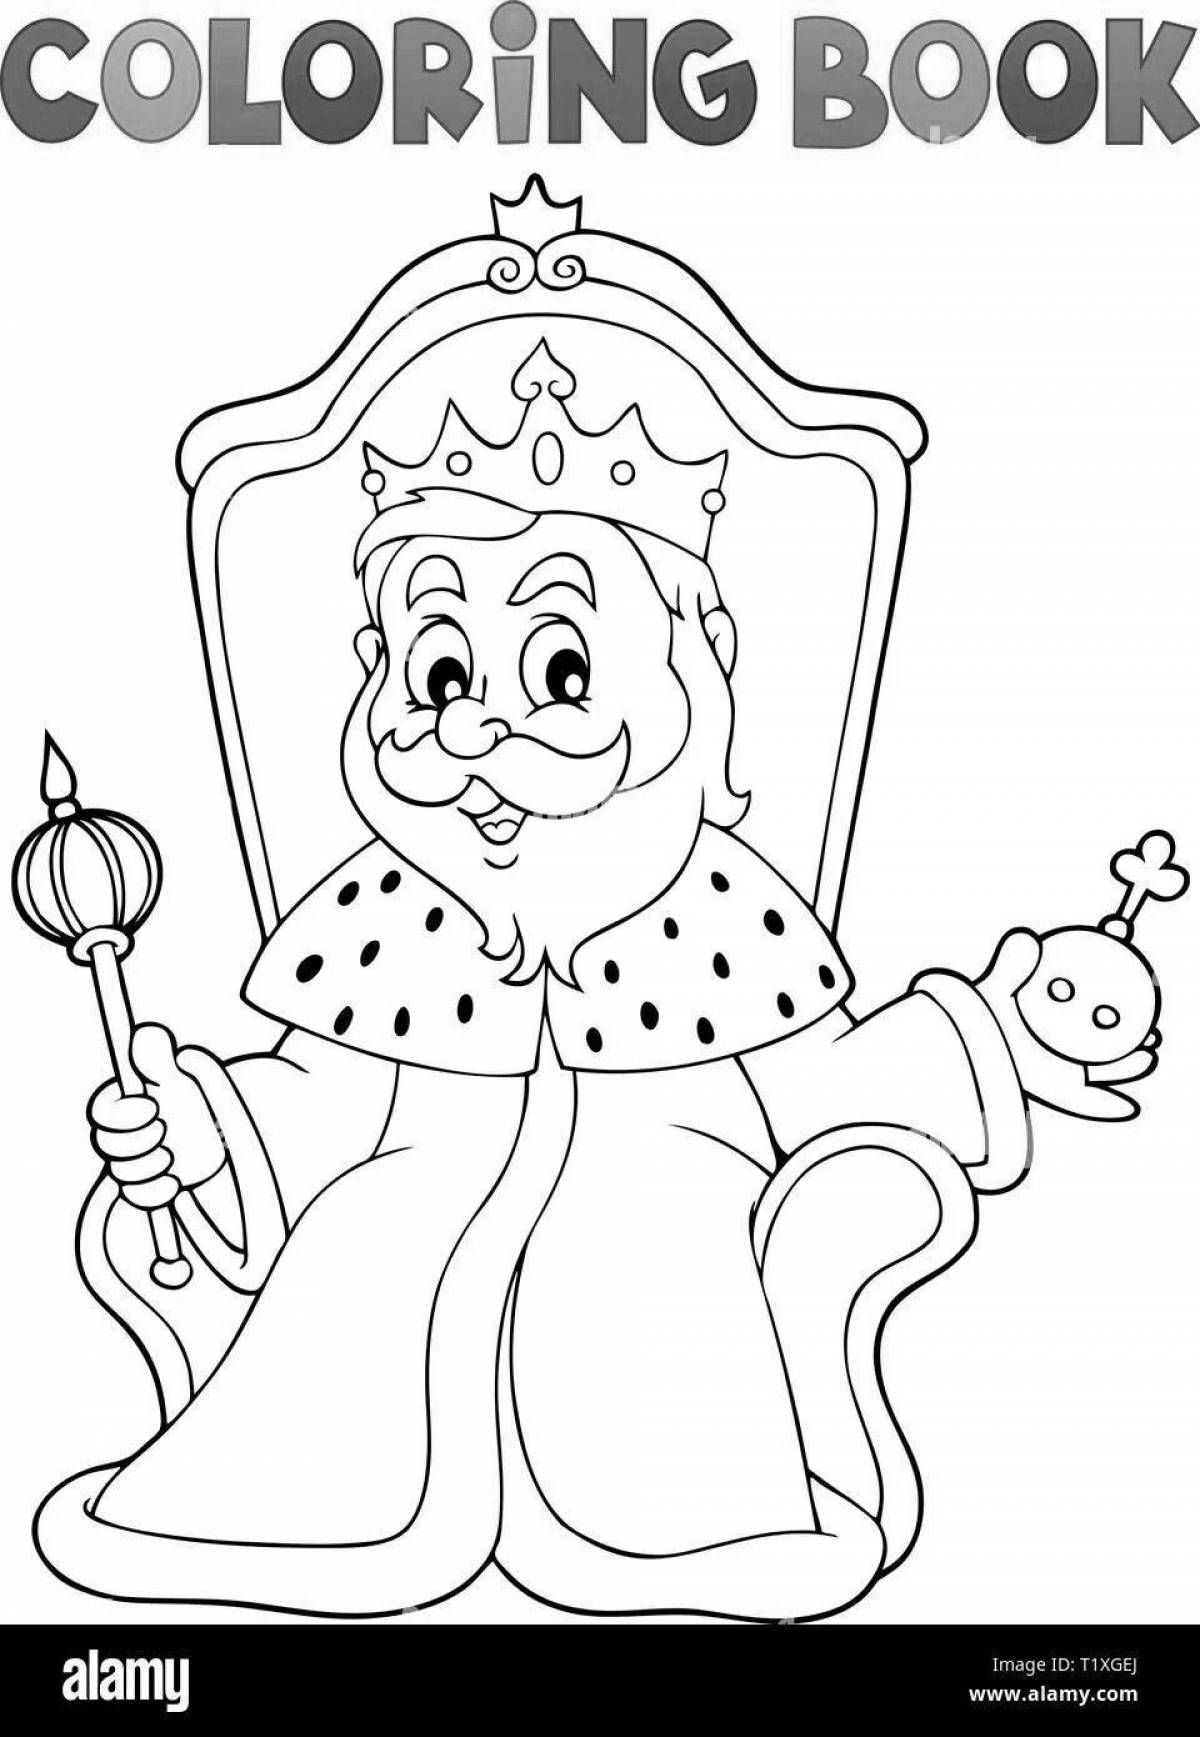 Величественный король раскраски для детей